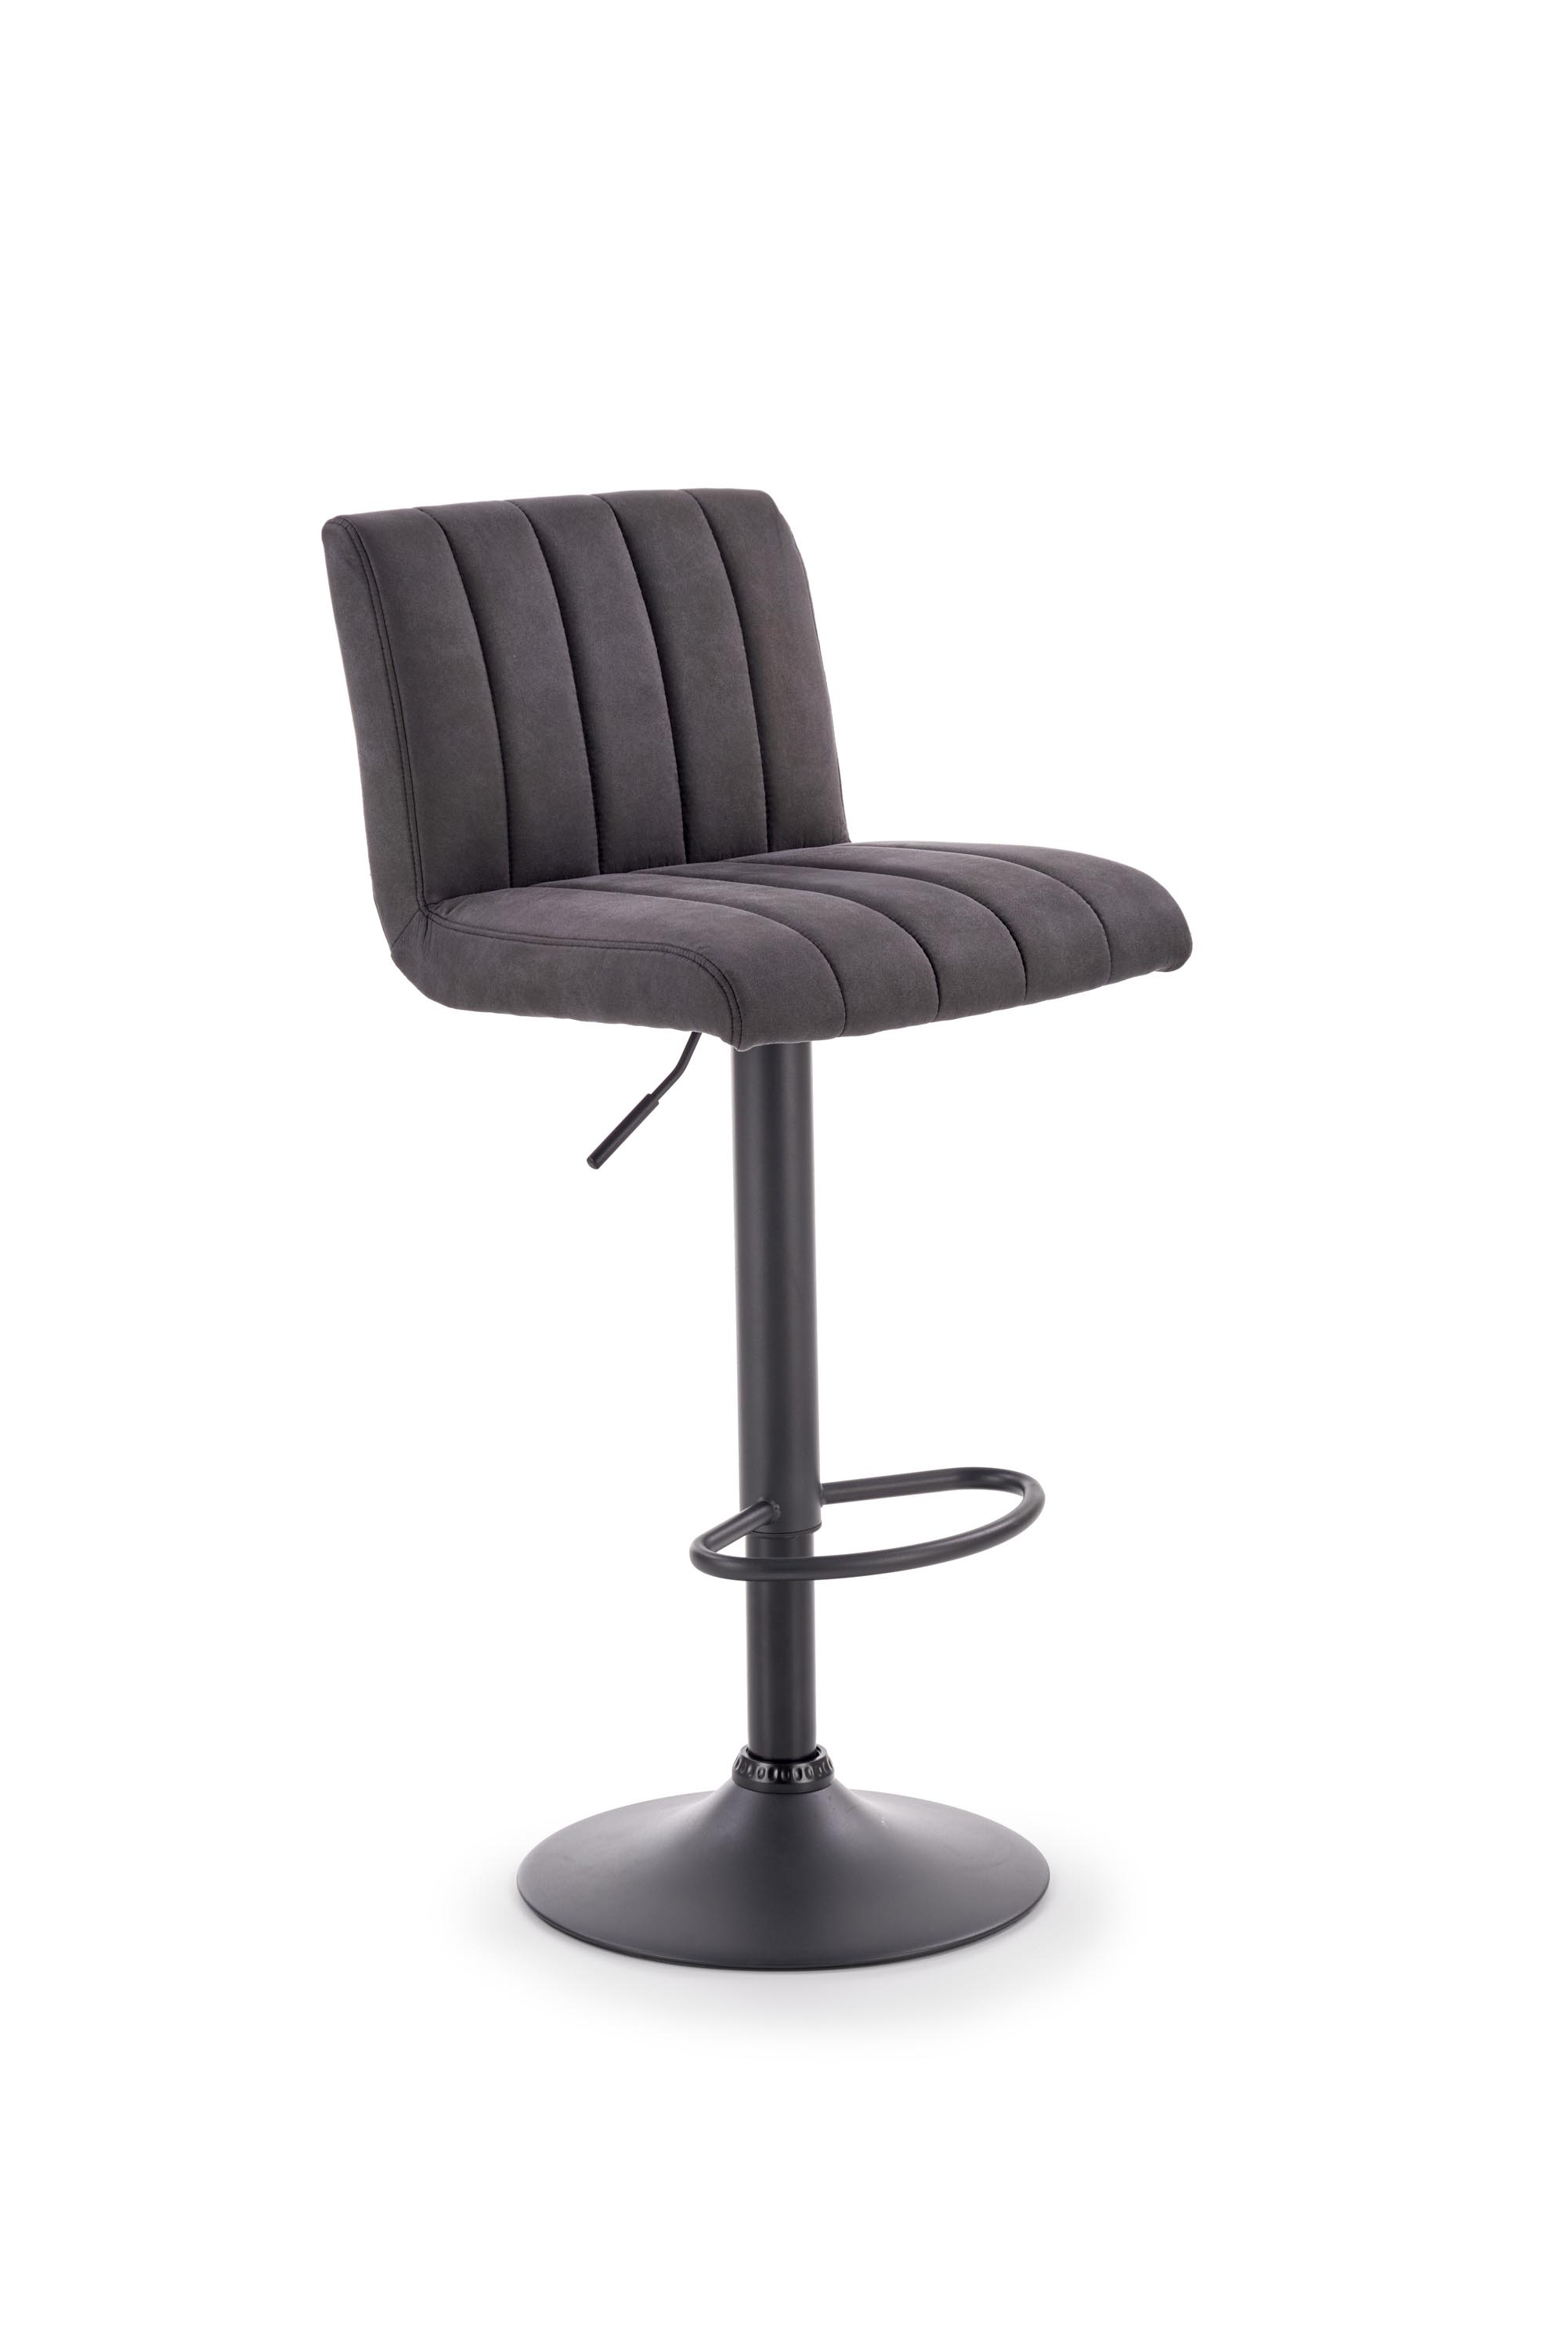 H89 barová židle noha - černá, čalounění - tmavě šedá | Nábytek a dekorace > Jídelna > Barové židle a stoličky > Barové židle